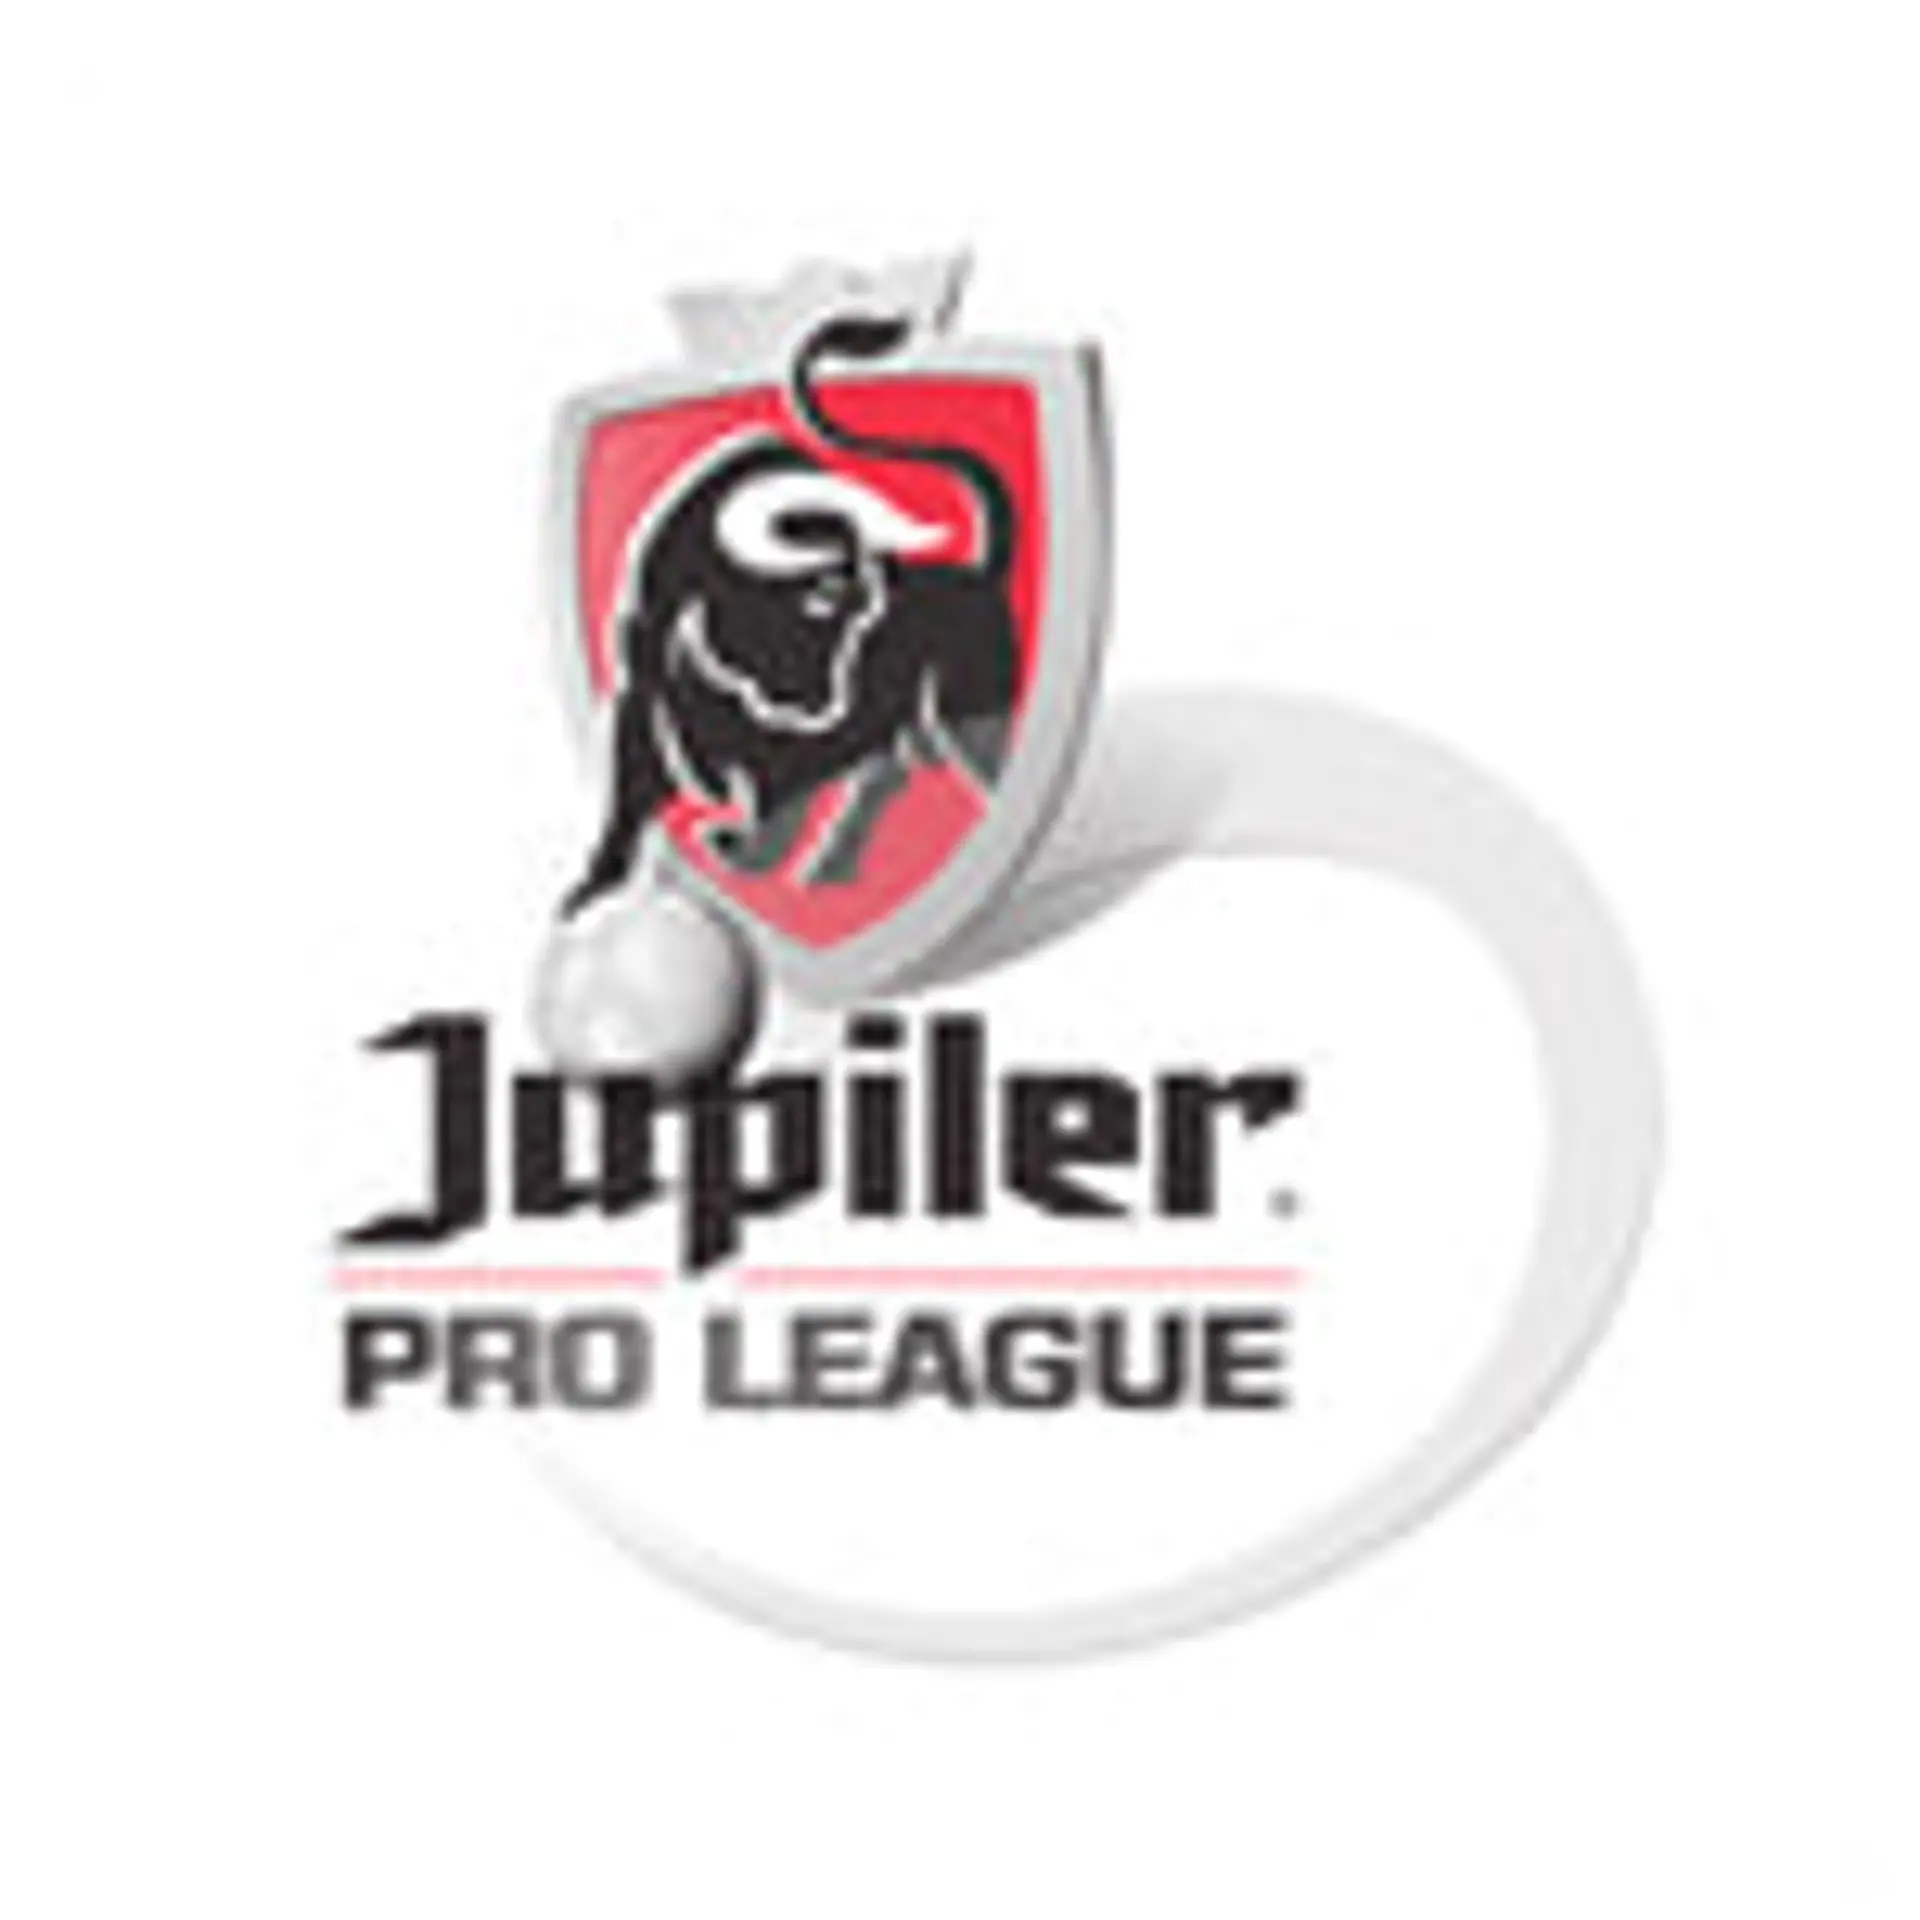 Belgique. Pro League